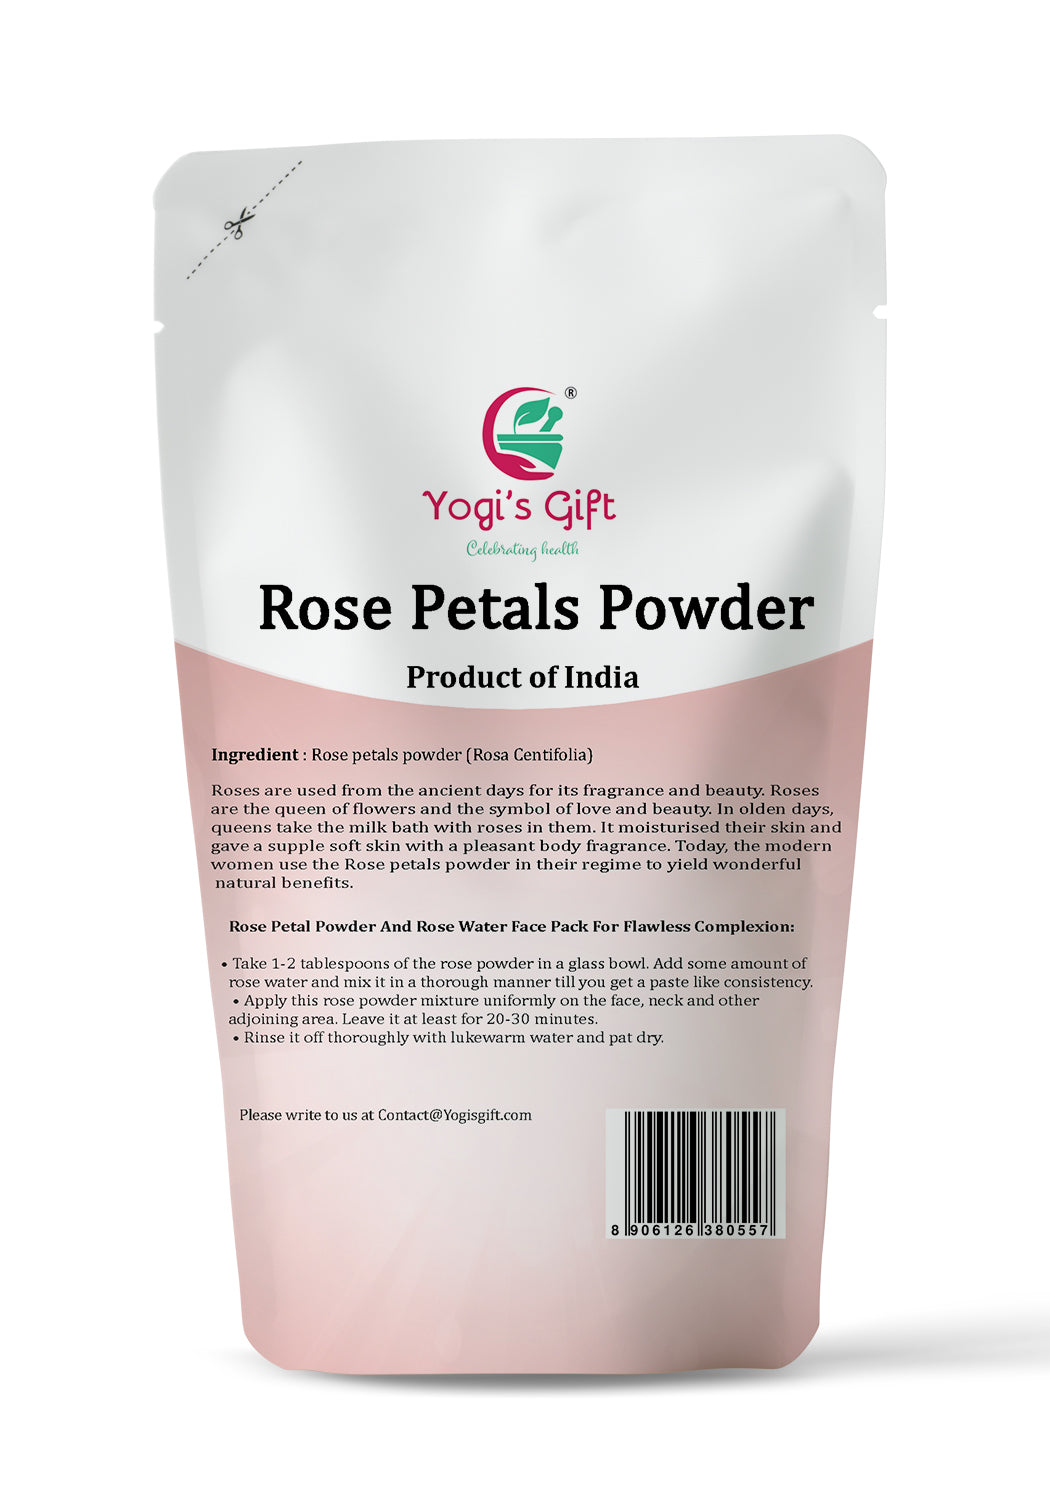 Rose Petal Powder, 250 grams, Make Tea, Smoothies or Lattes